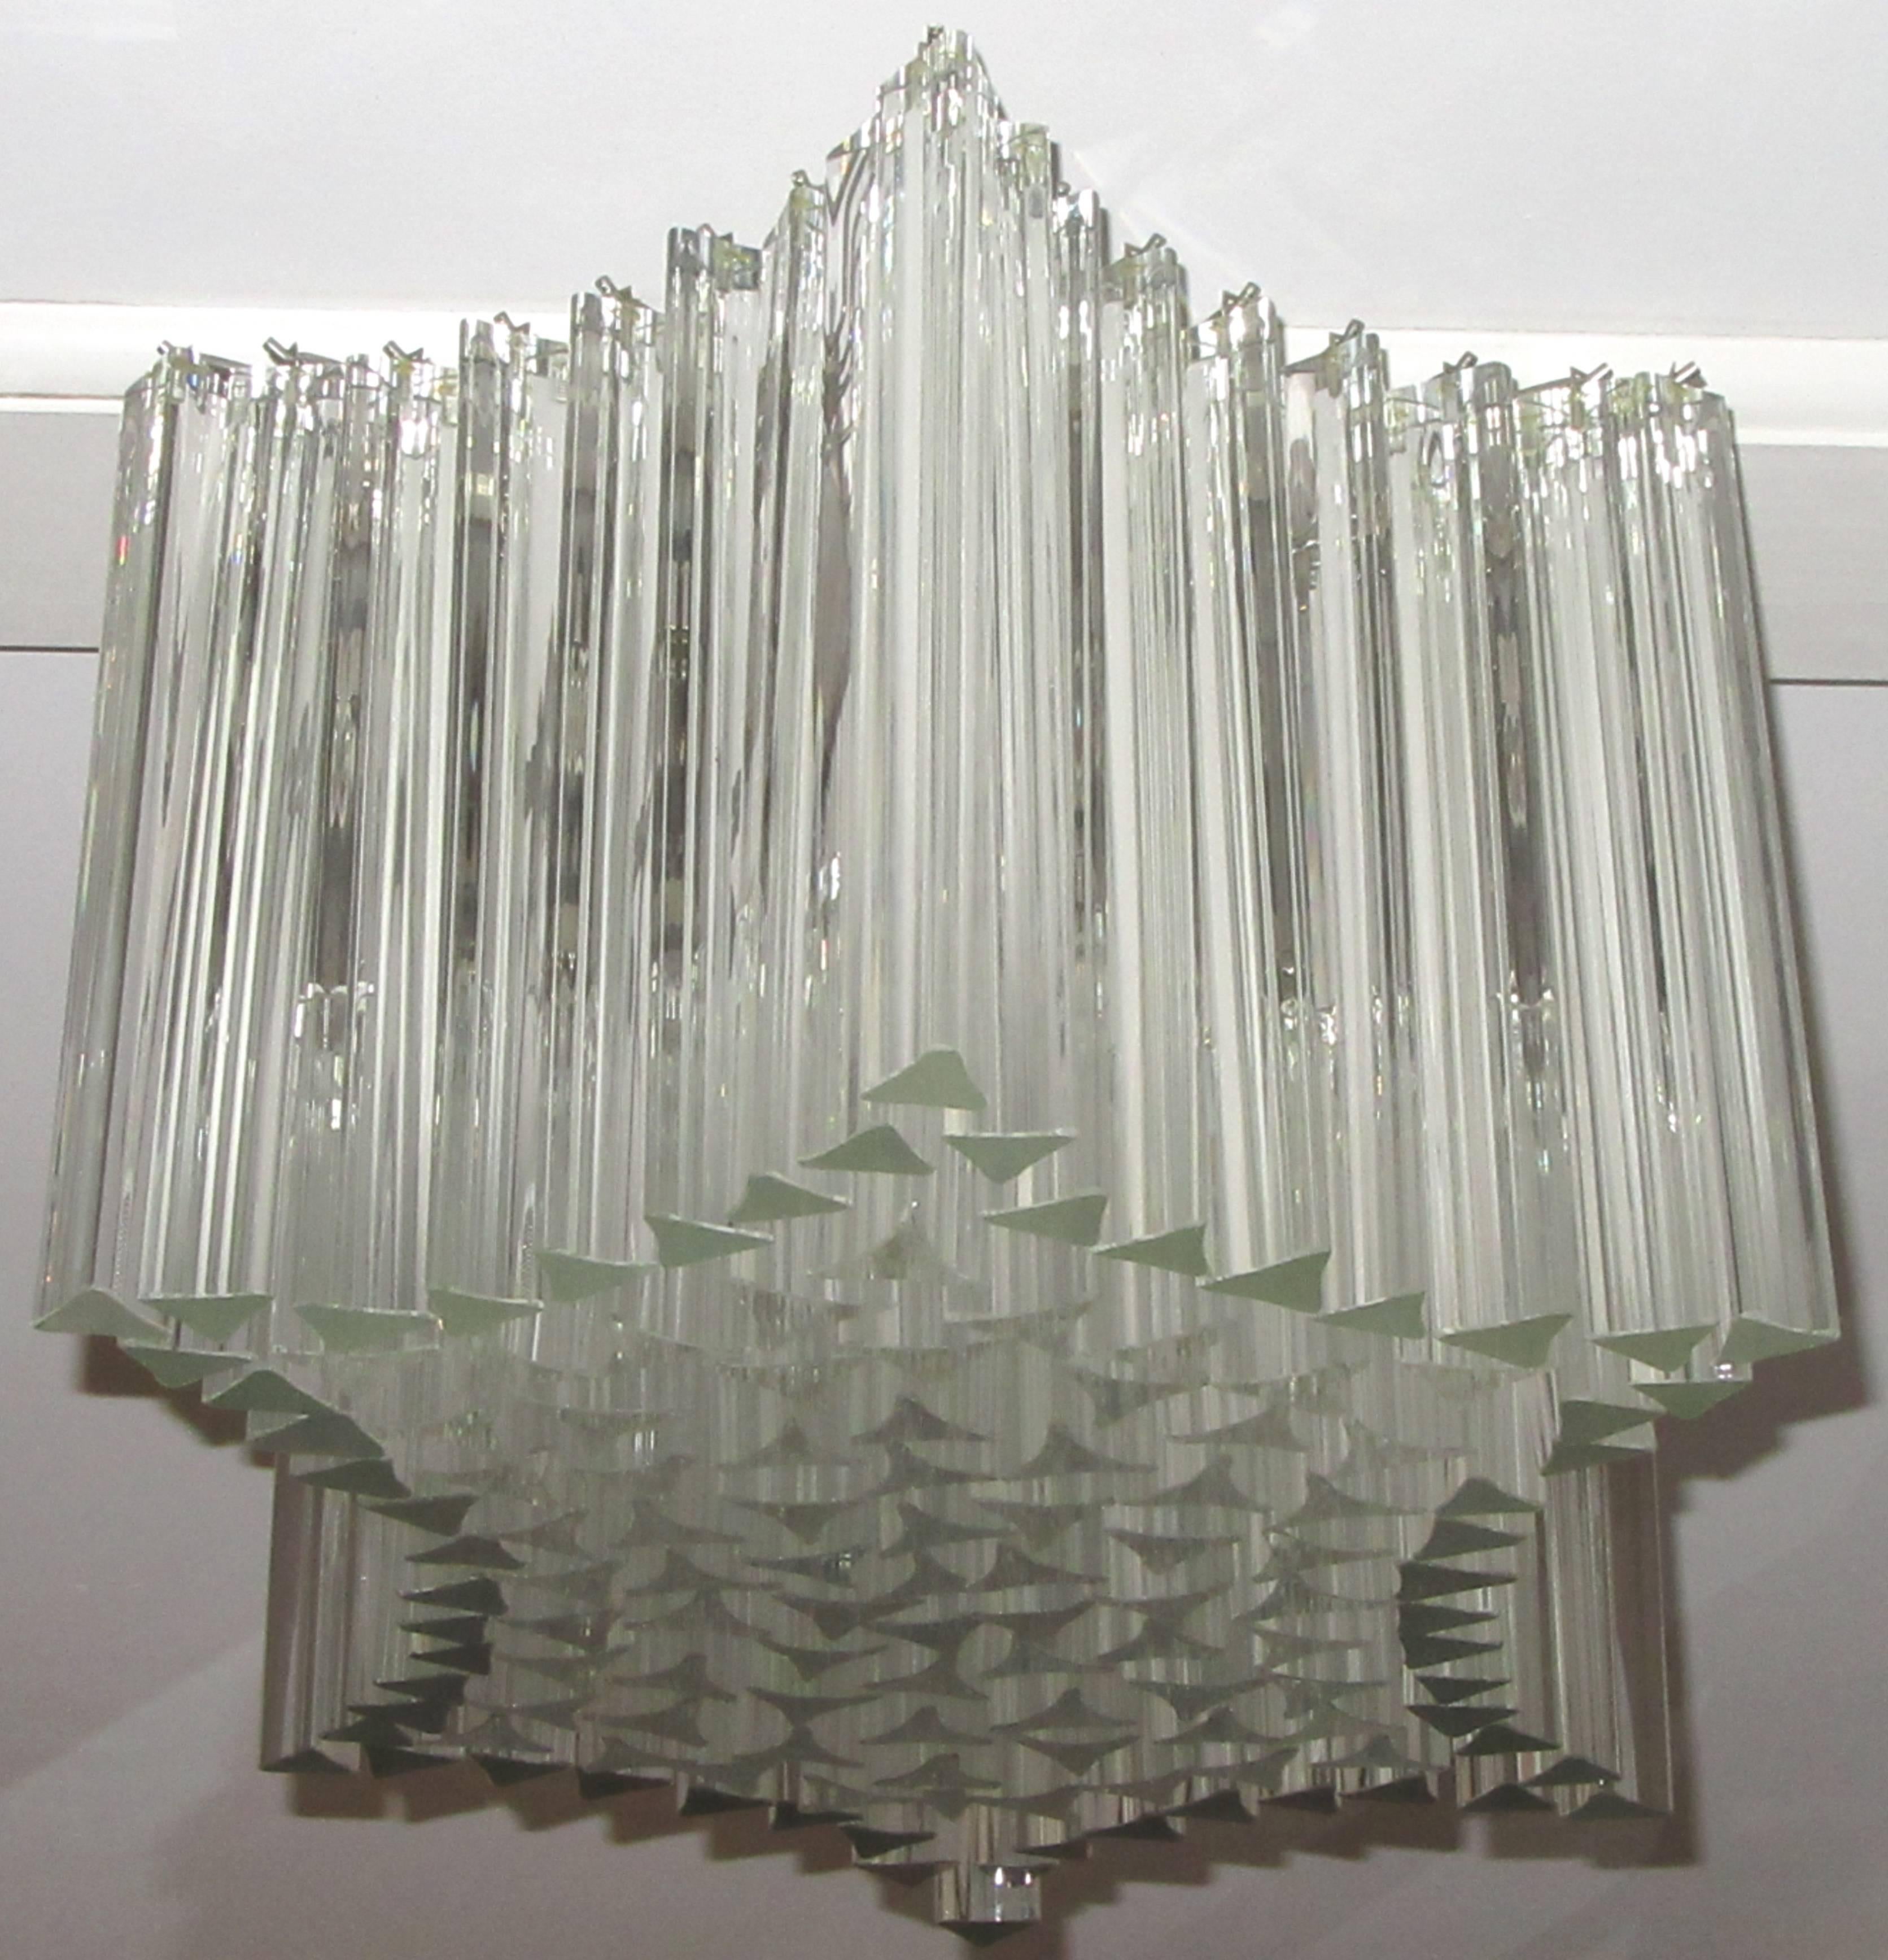 Lustre Venini de forme hexagonale, composé de deux tailles de prismes de verre, suspendus à une armature métallique. Six douilles standard dans la cage de prismes de verre fournissent une quantité importante de lumière.